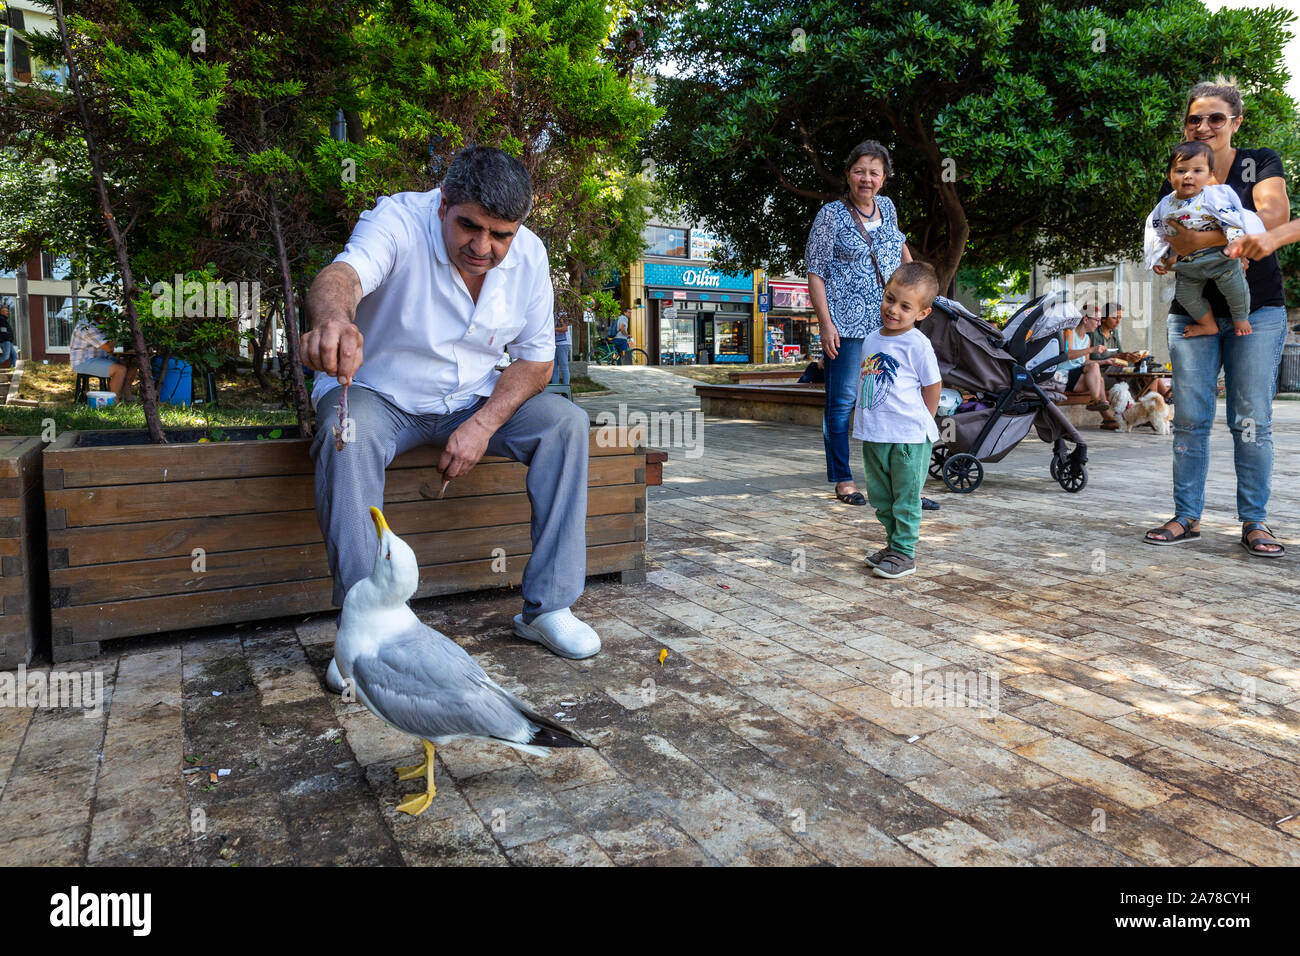 Menschen Möwe fressen in Kuzguncuk Ufer. Kuzguncuk ist ein Stadtteil im Uskudar Stadtteil auf der asiatischen Seite des Bosporus in Istanbul, Türkei. Stockfoto